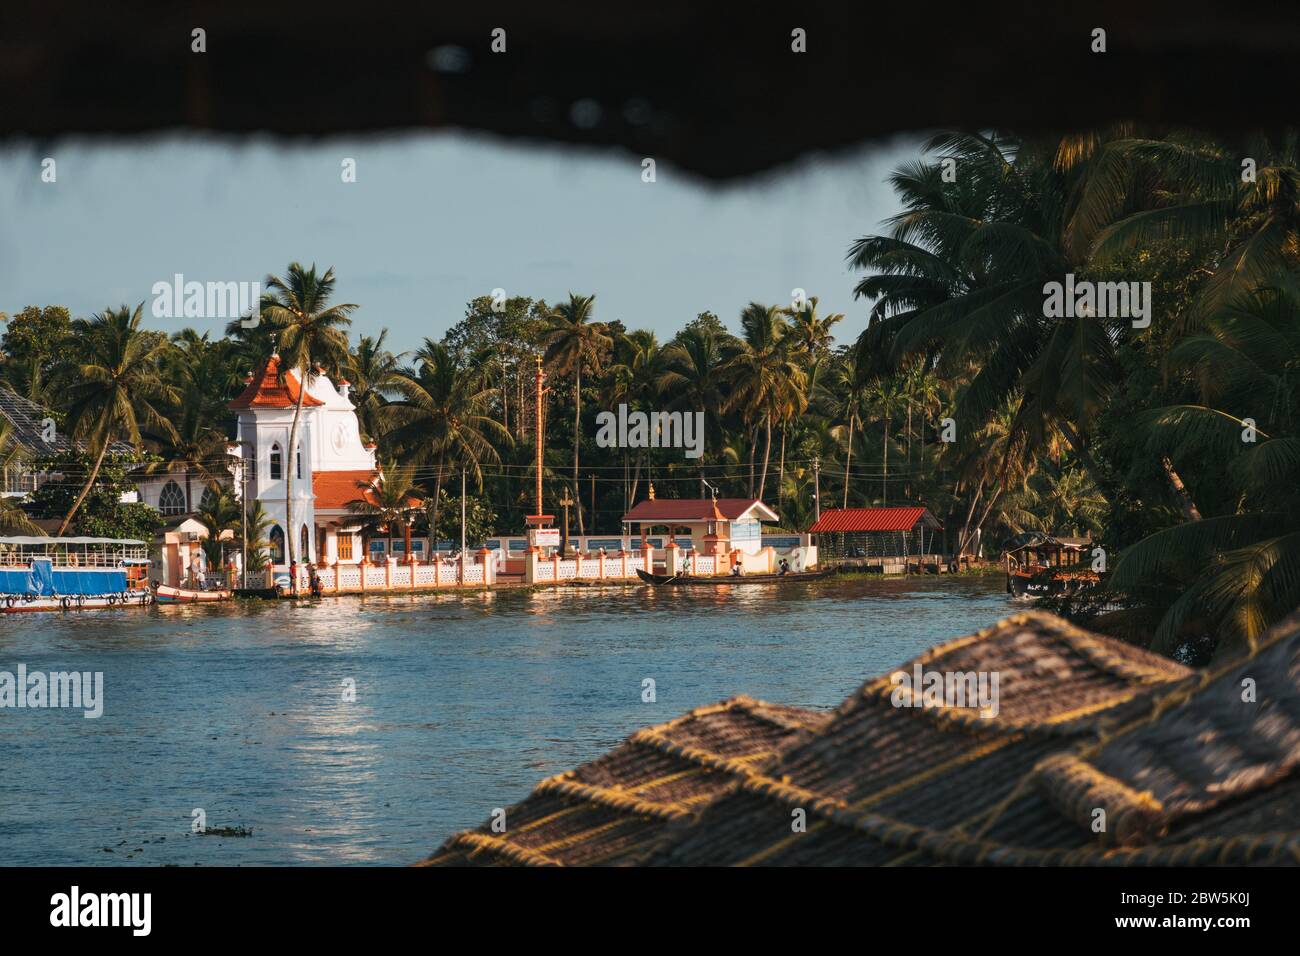 Una pequeña iglesia cristiana a orillas de los remansos de Kerala en la India, vista desde la parte trasera de una casa flotante Foto de stock